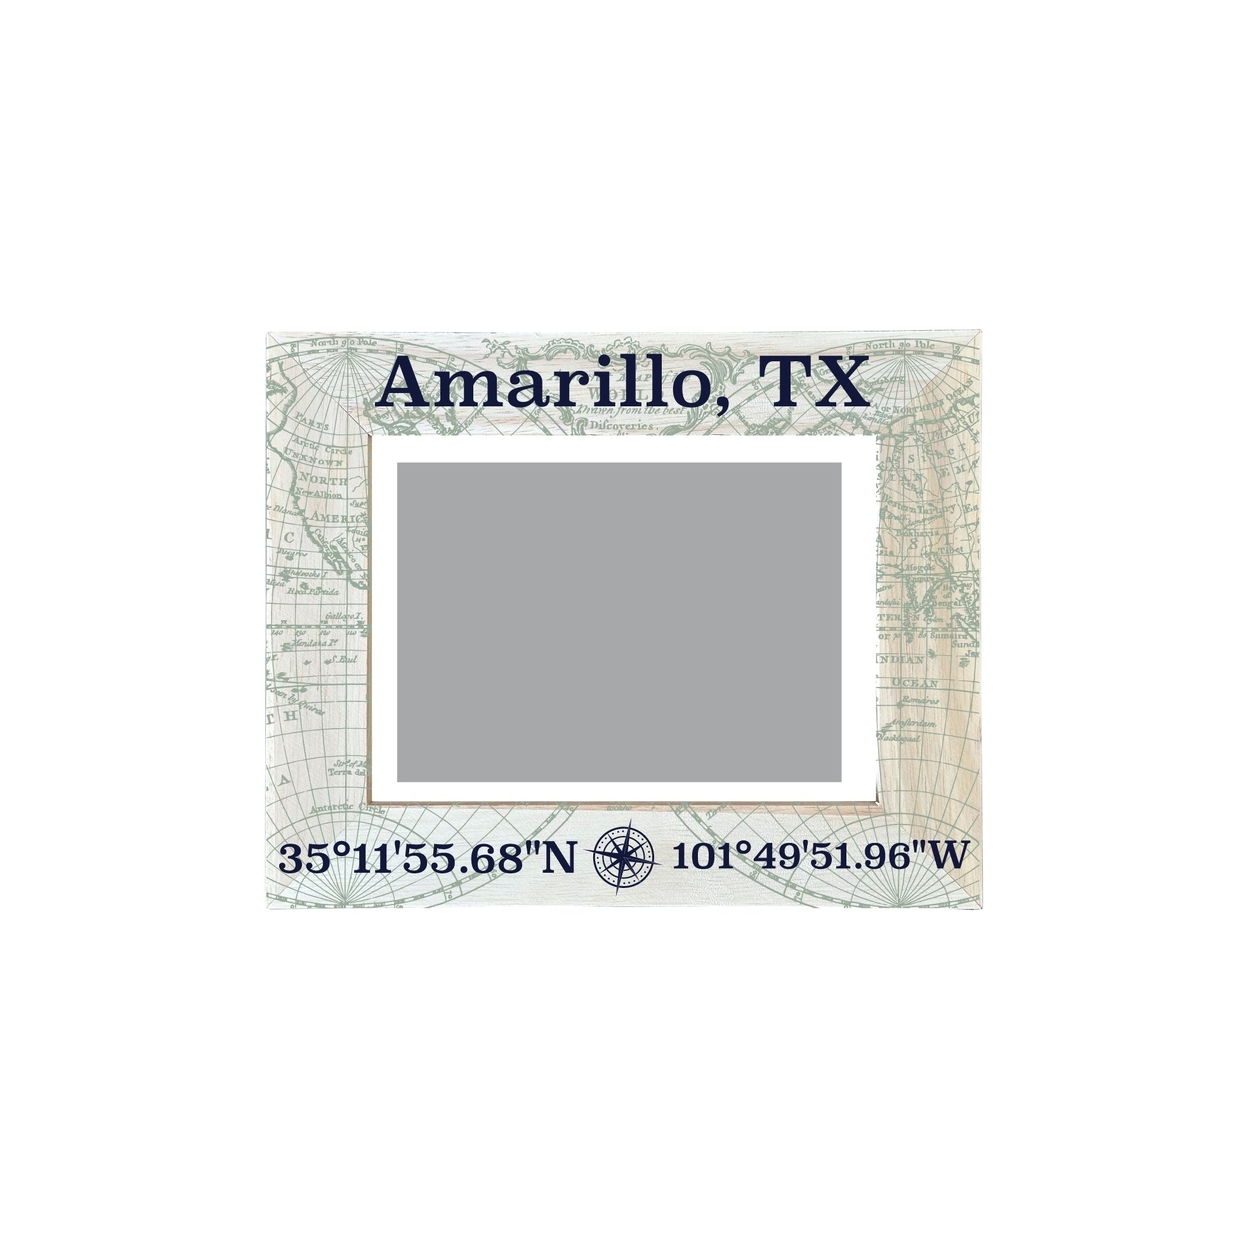 Amarillo Texas Souvenir Wooden Photo Frame Compass Coordinates Design Matted To 4 X 6